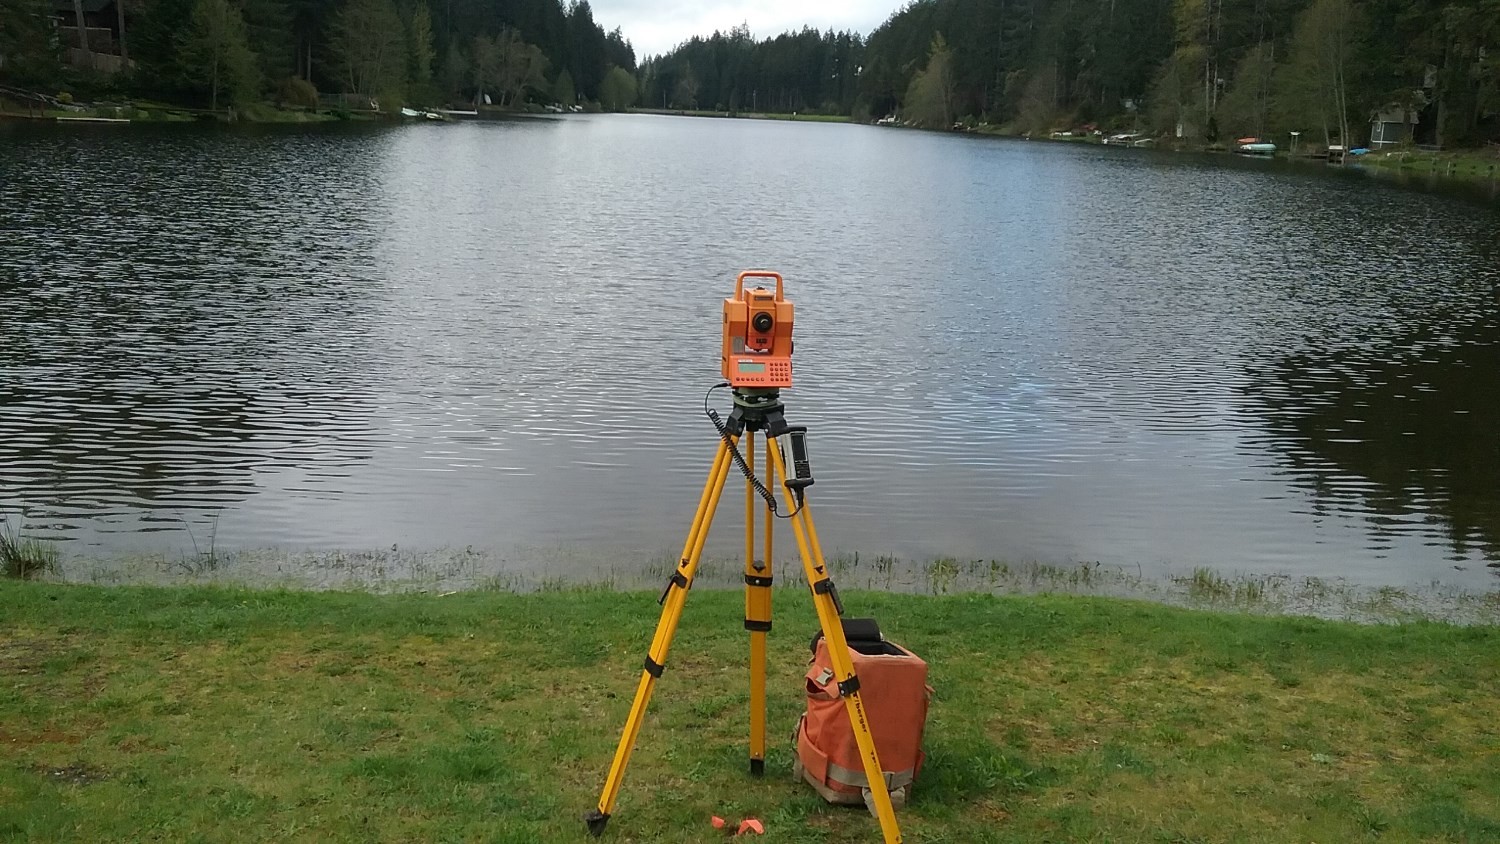 Professional Land Surveying - turnbow land surveying pllc